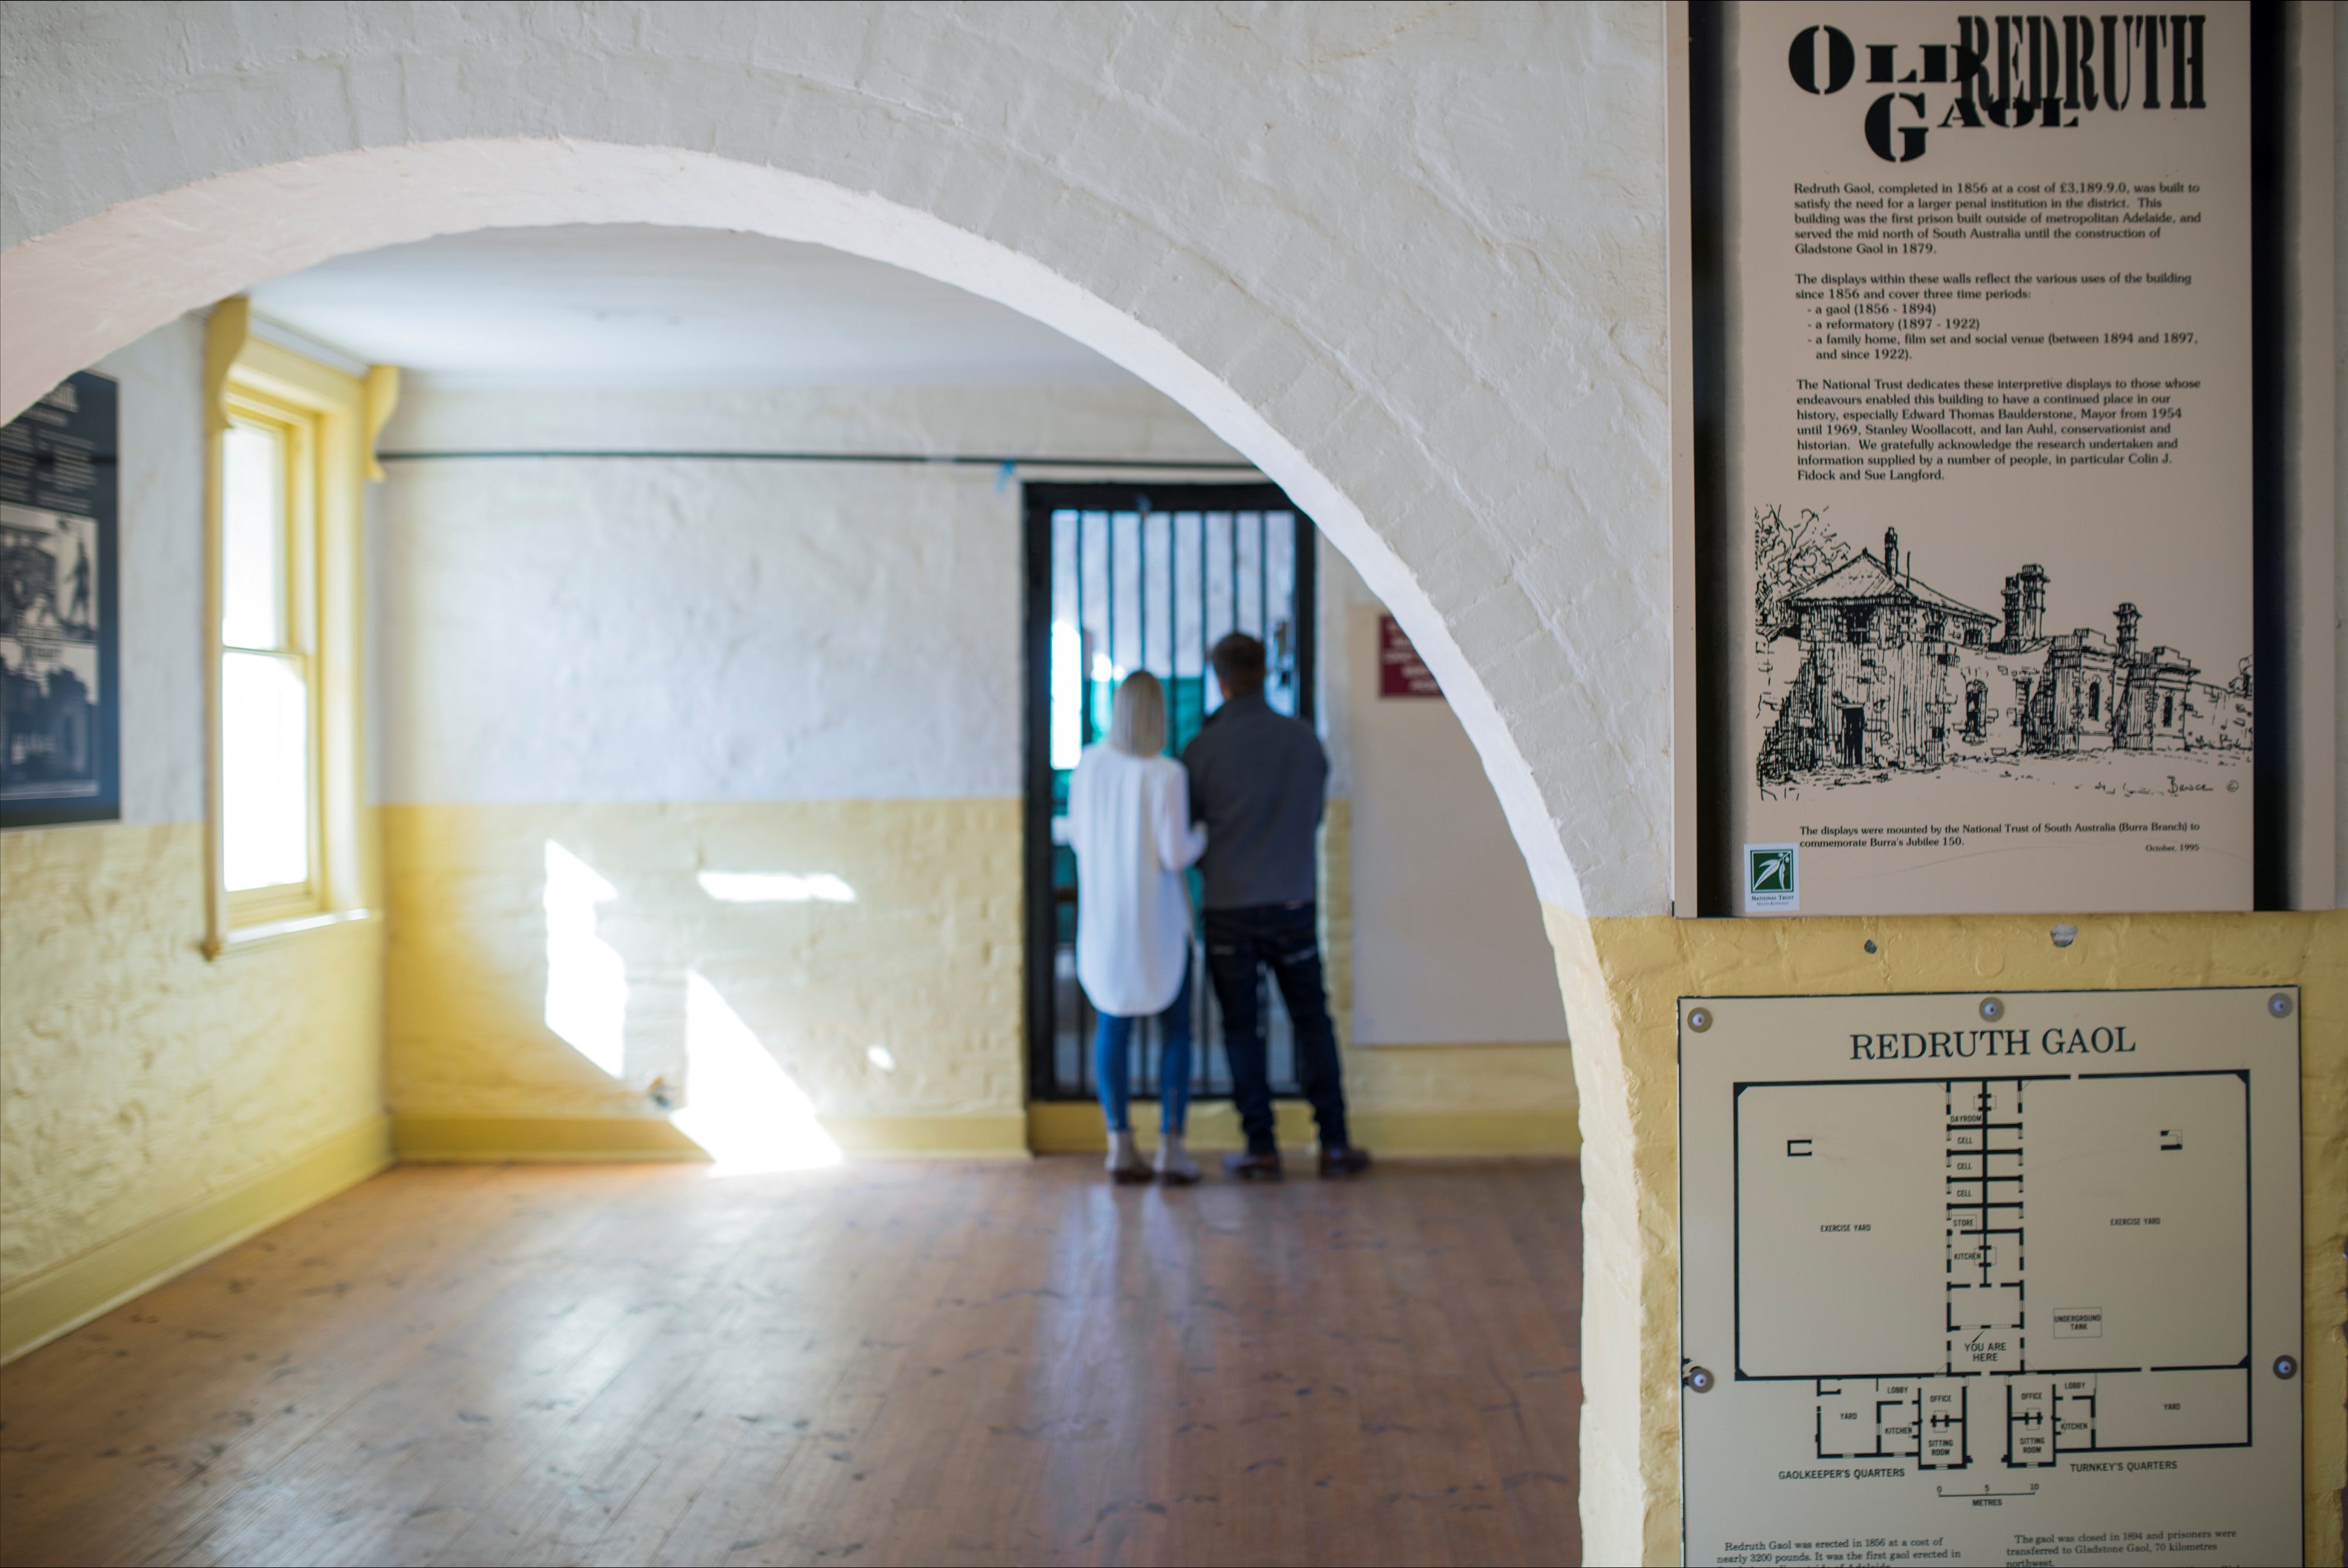 Redruth Gaol - Accommodation Brunswick Heads